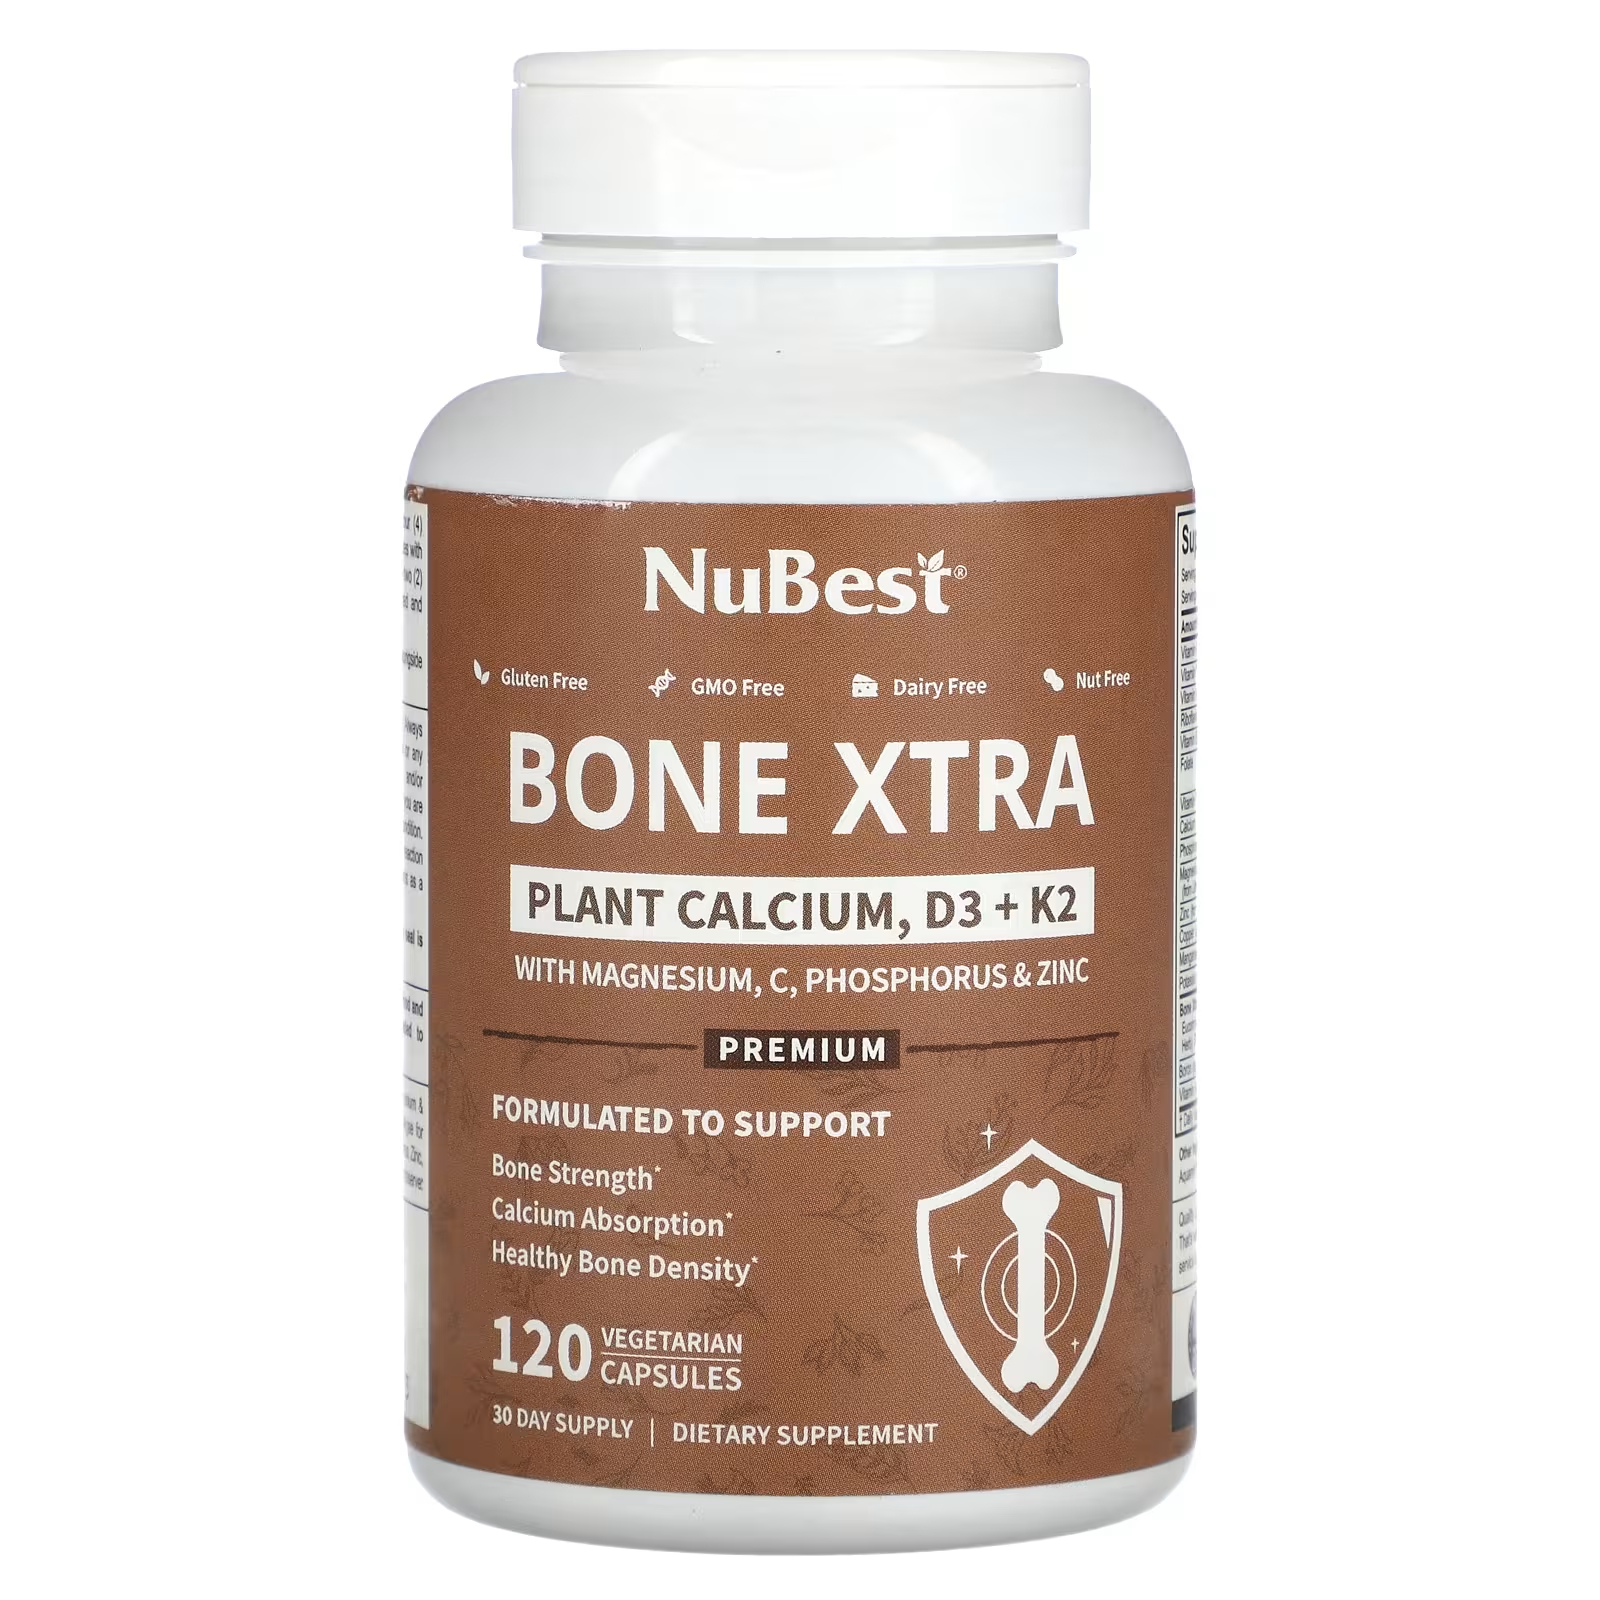 NuBest Bone Xtra Растительный кальций D3 + K2 120 капсул